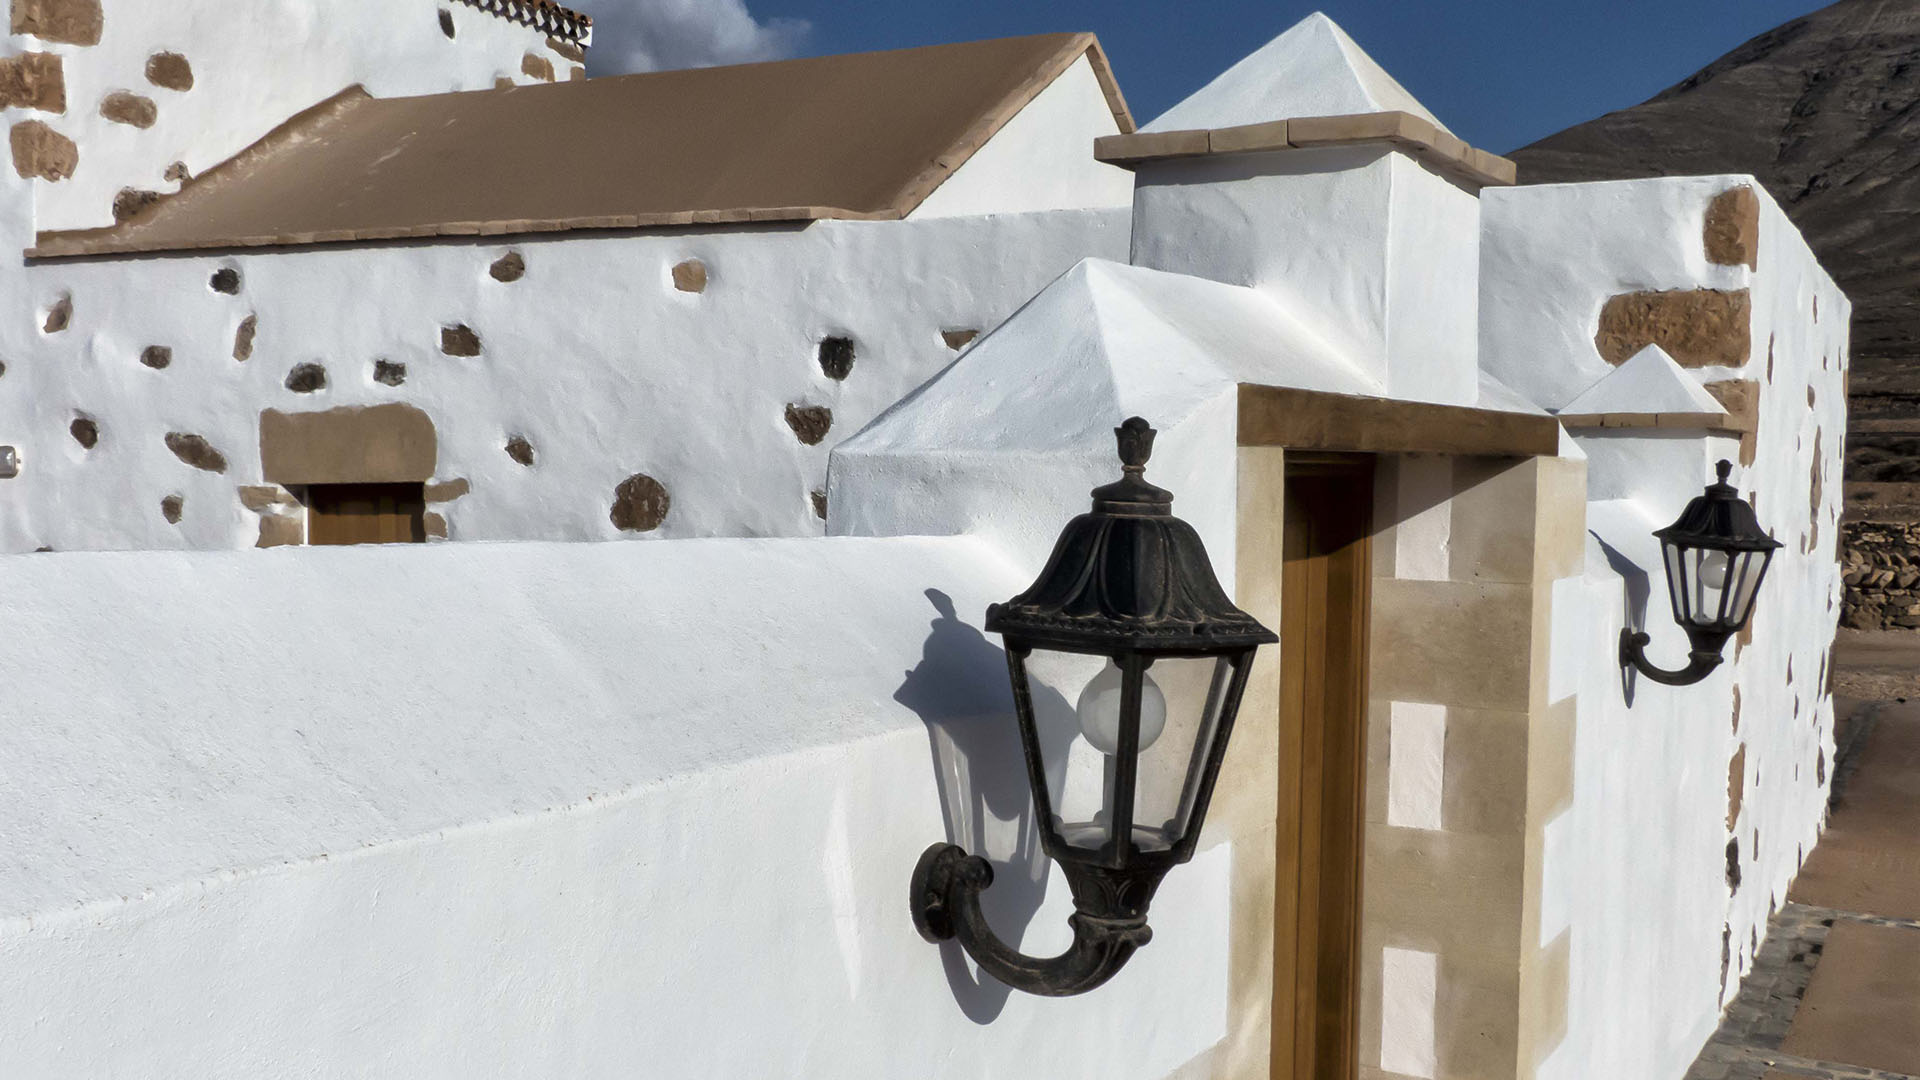 Sehenswürdigkeiten Fuerteventuras: Tindaya – Casa Alta